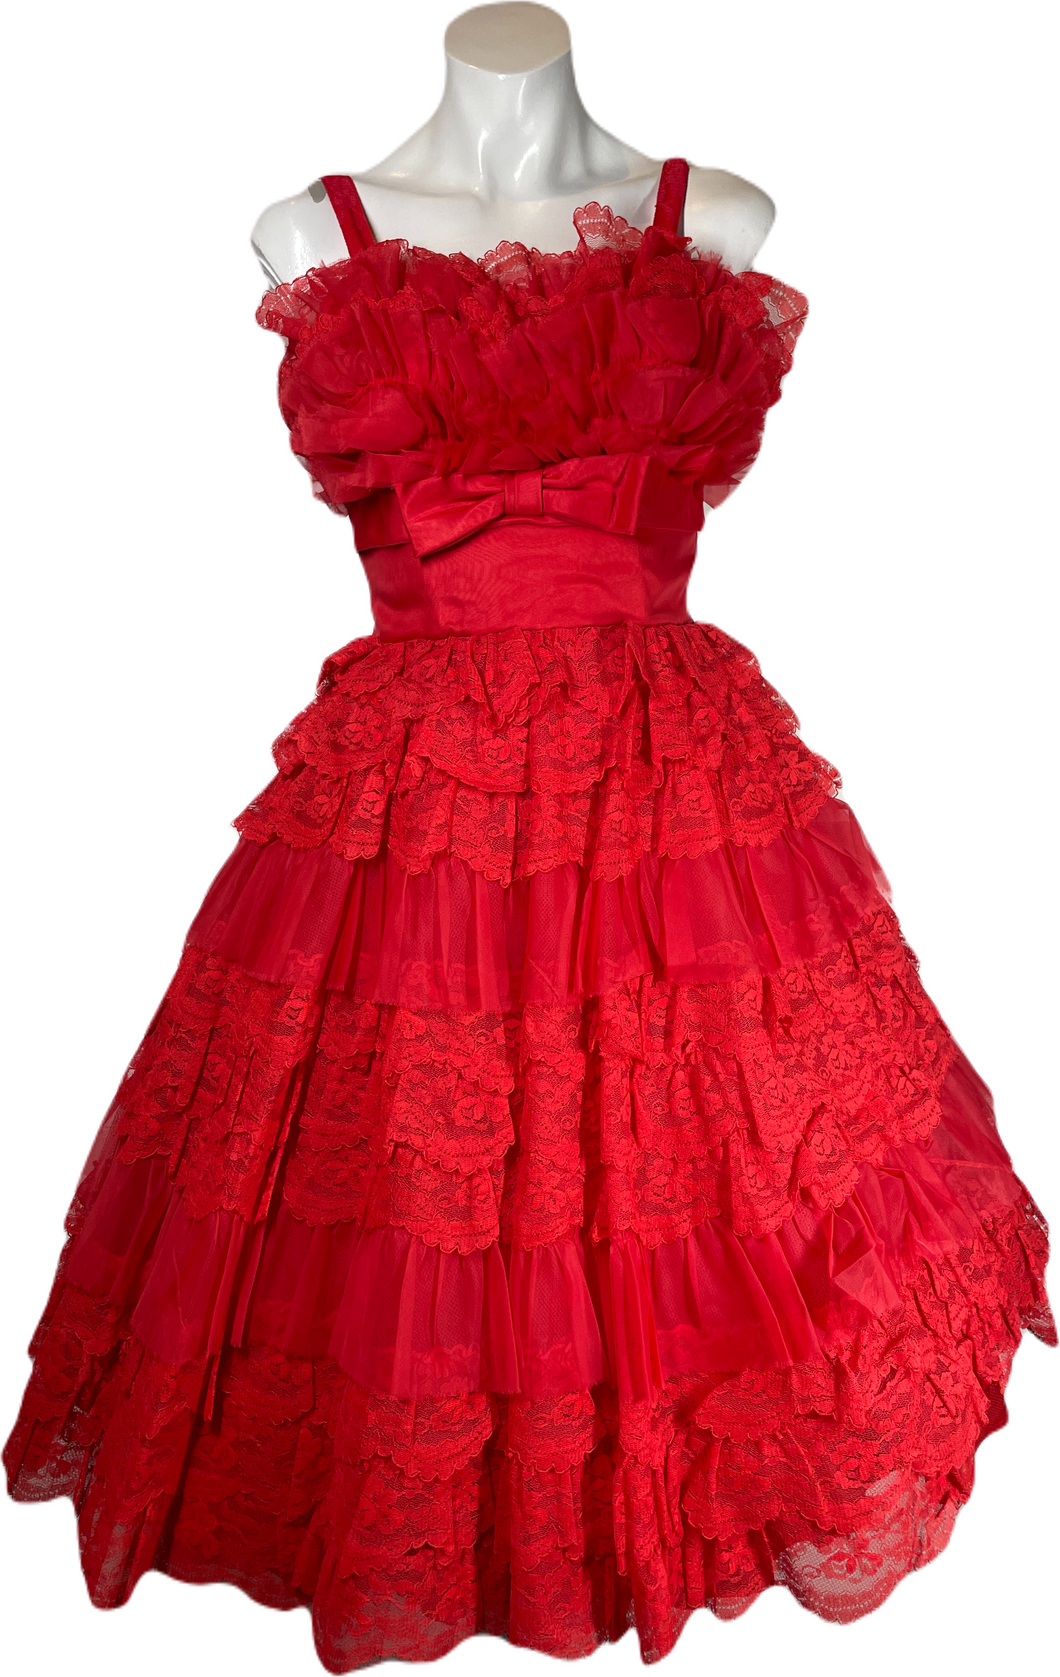 1960's Red Lace and Chiffon Cupcake Dress Size S